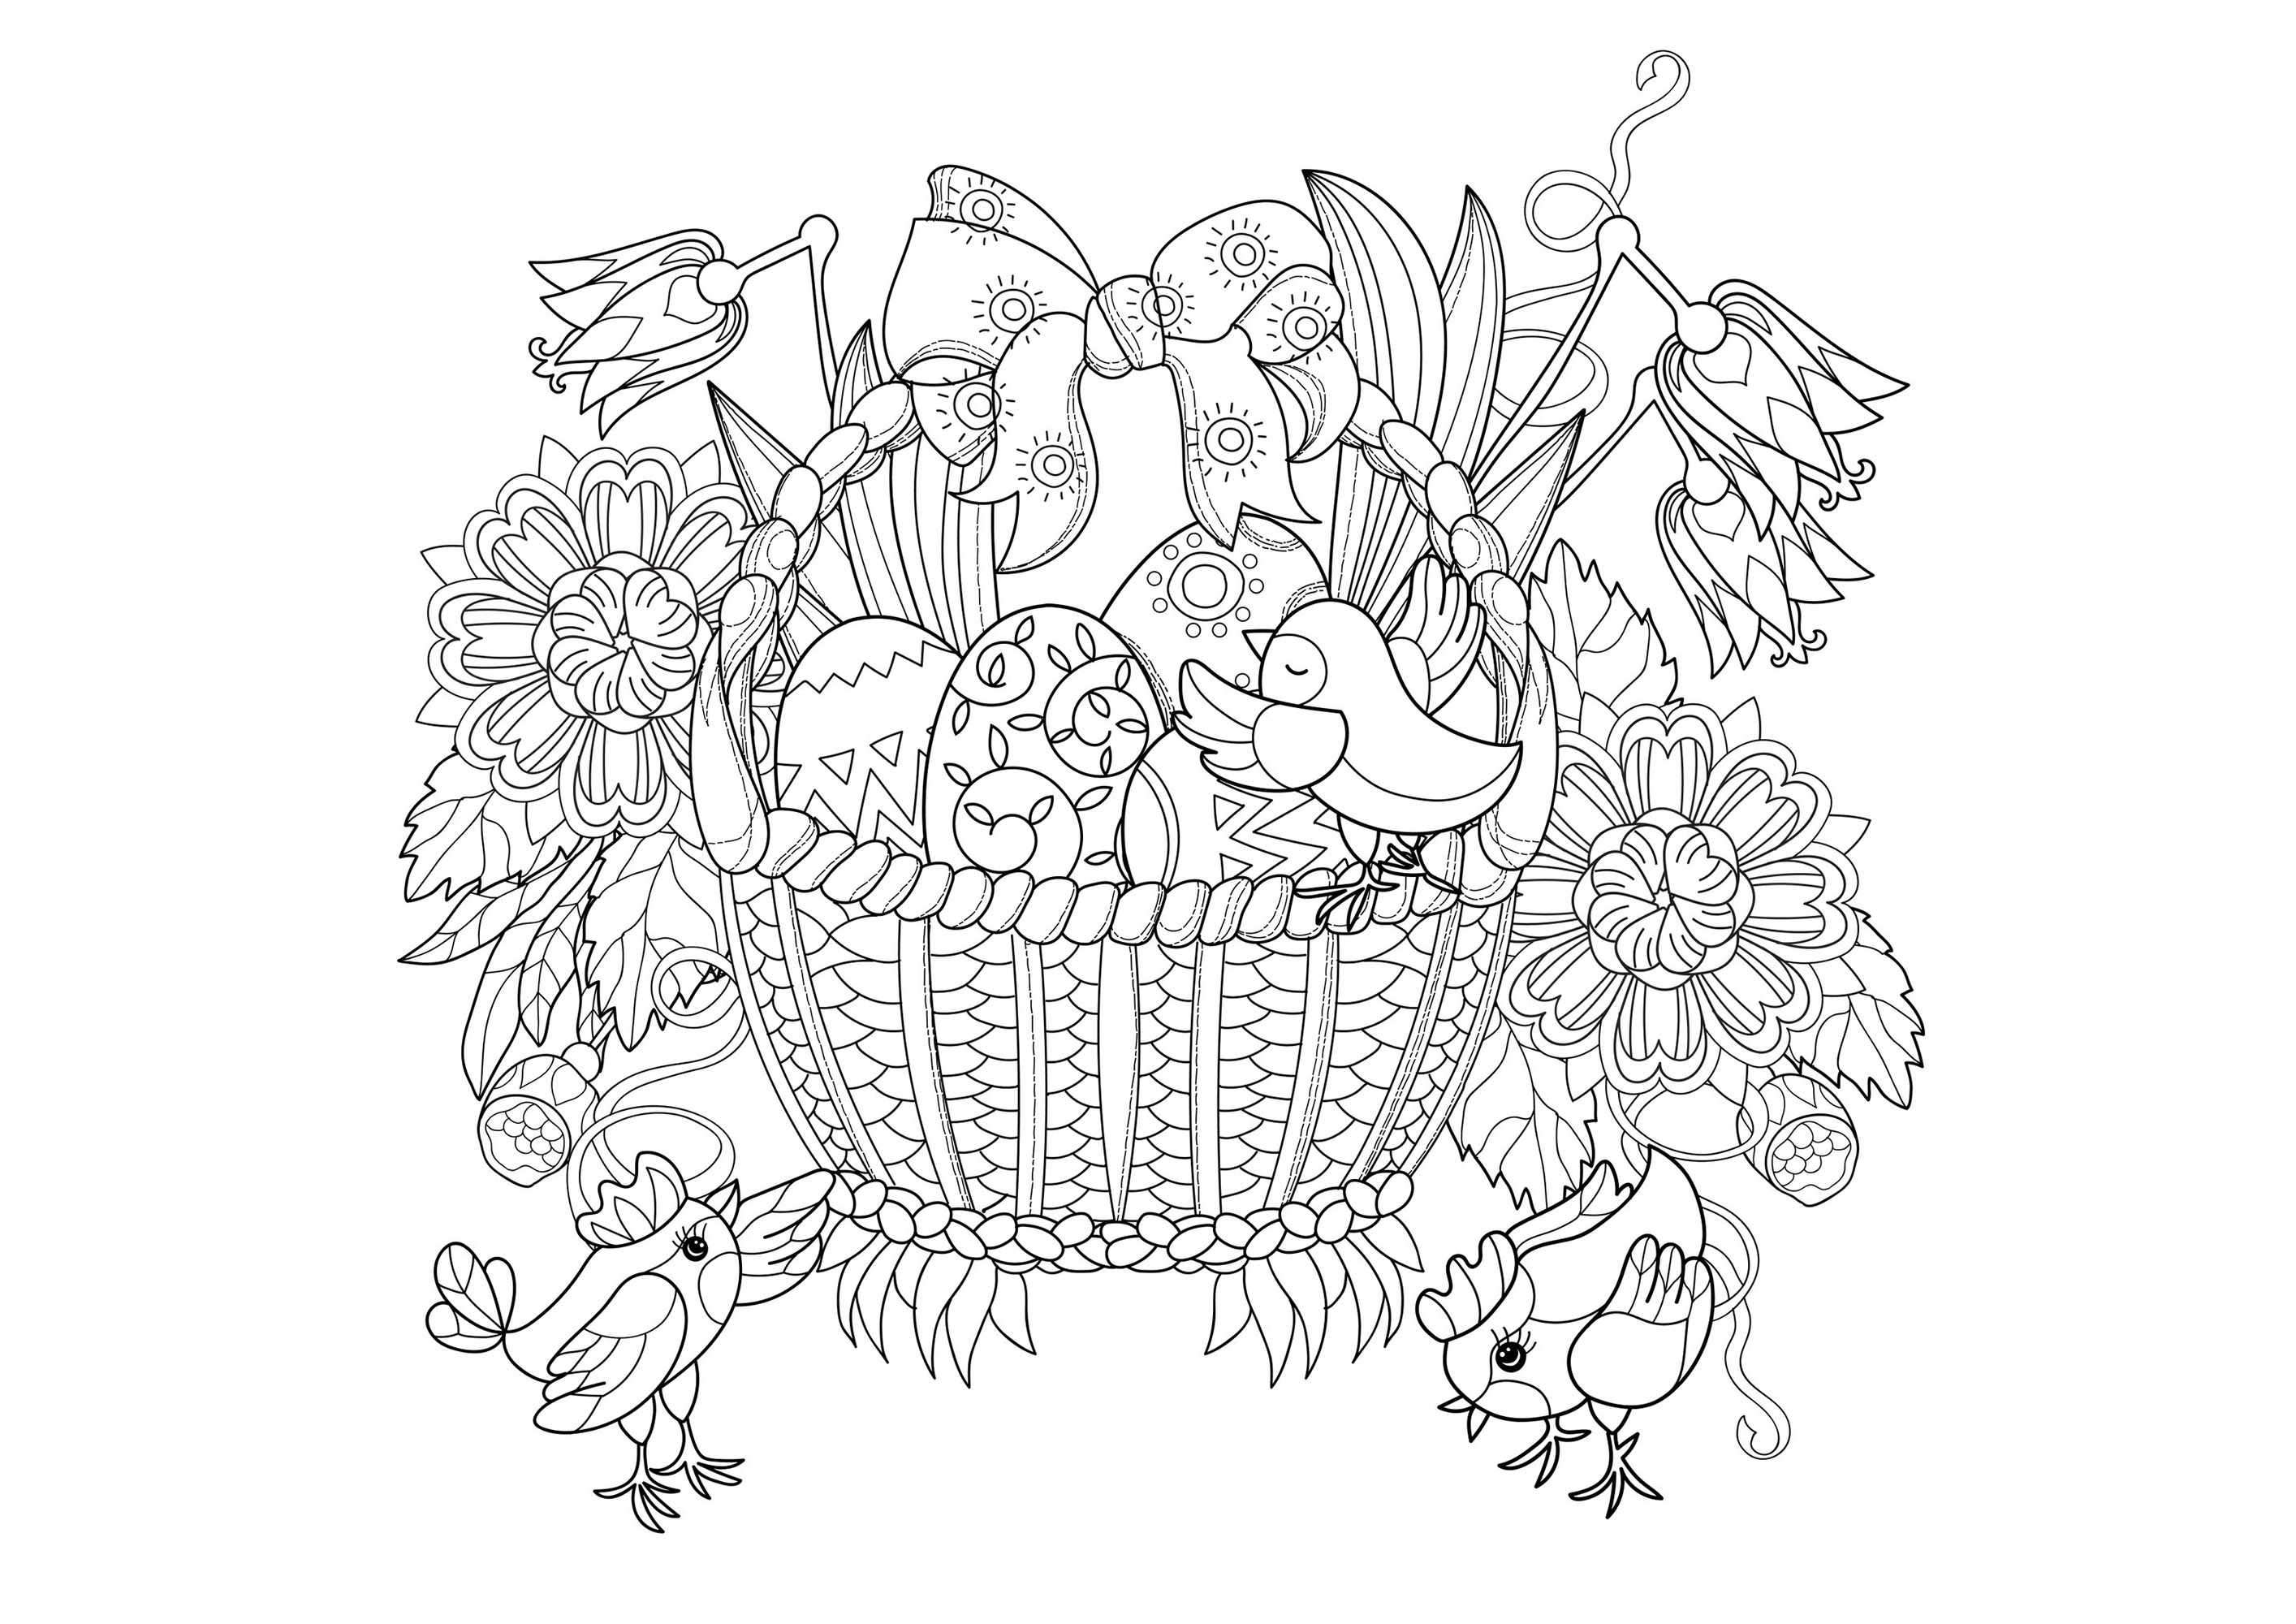 Joli coloriage (mais complexe) représentant un panier d'oeufs de Pâques et de jolis petits oisillons, Artiste : Yazzik   Source : 123rf